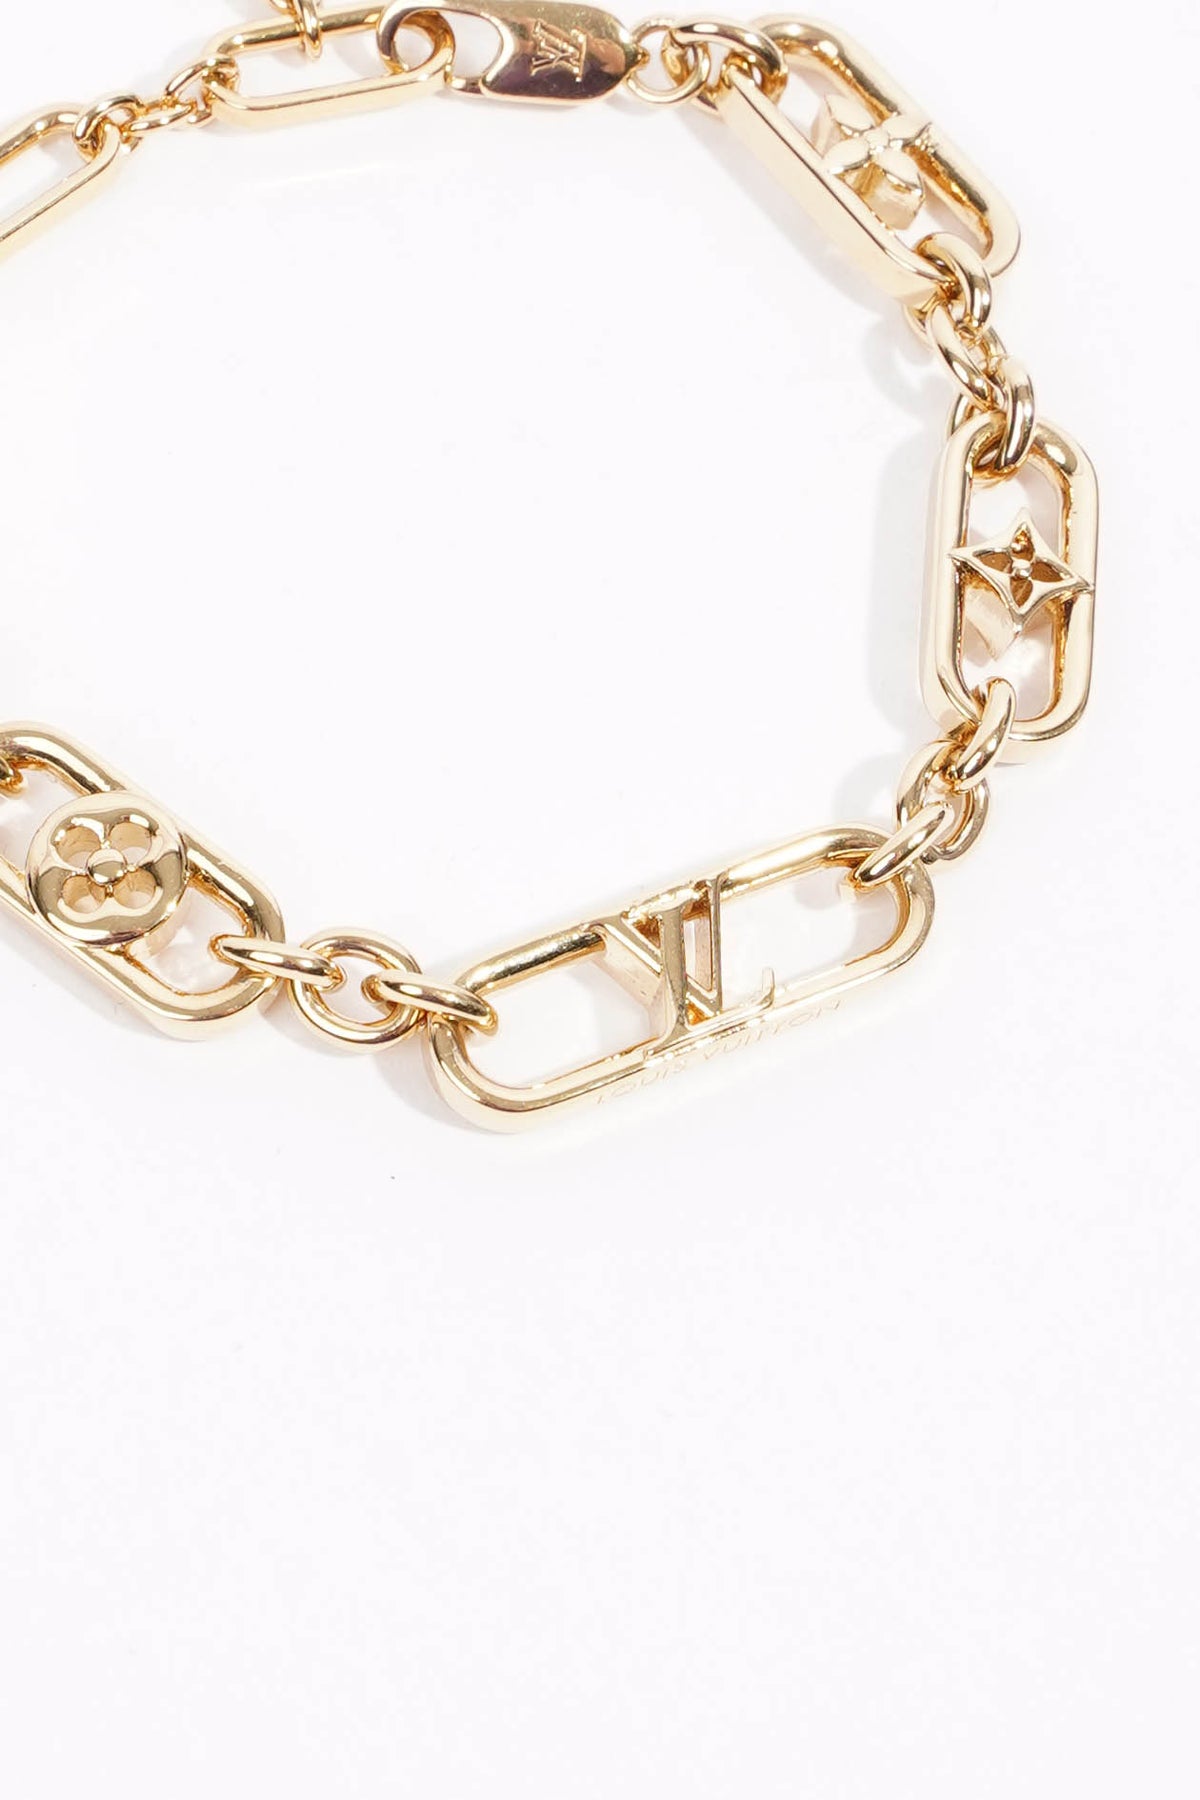 LV Chain Links Bracelet - LOUIS VUITTON